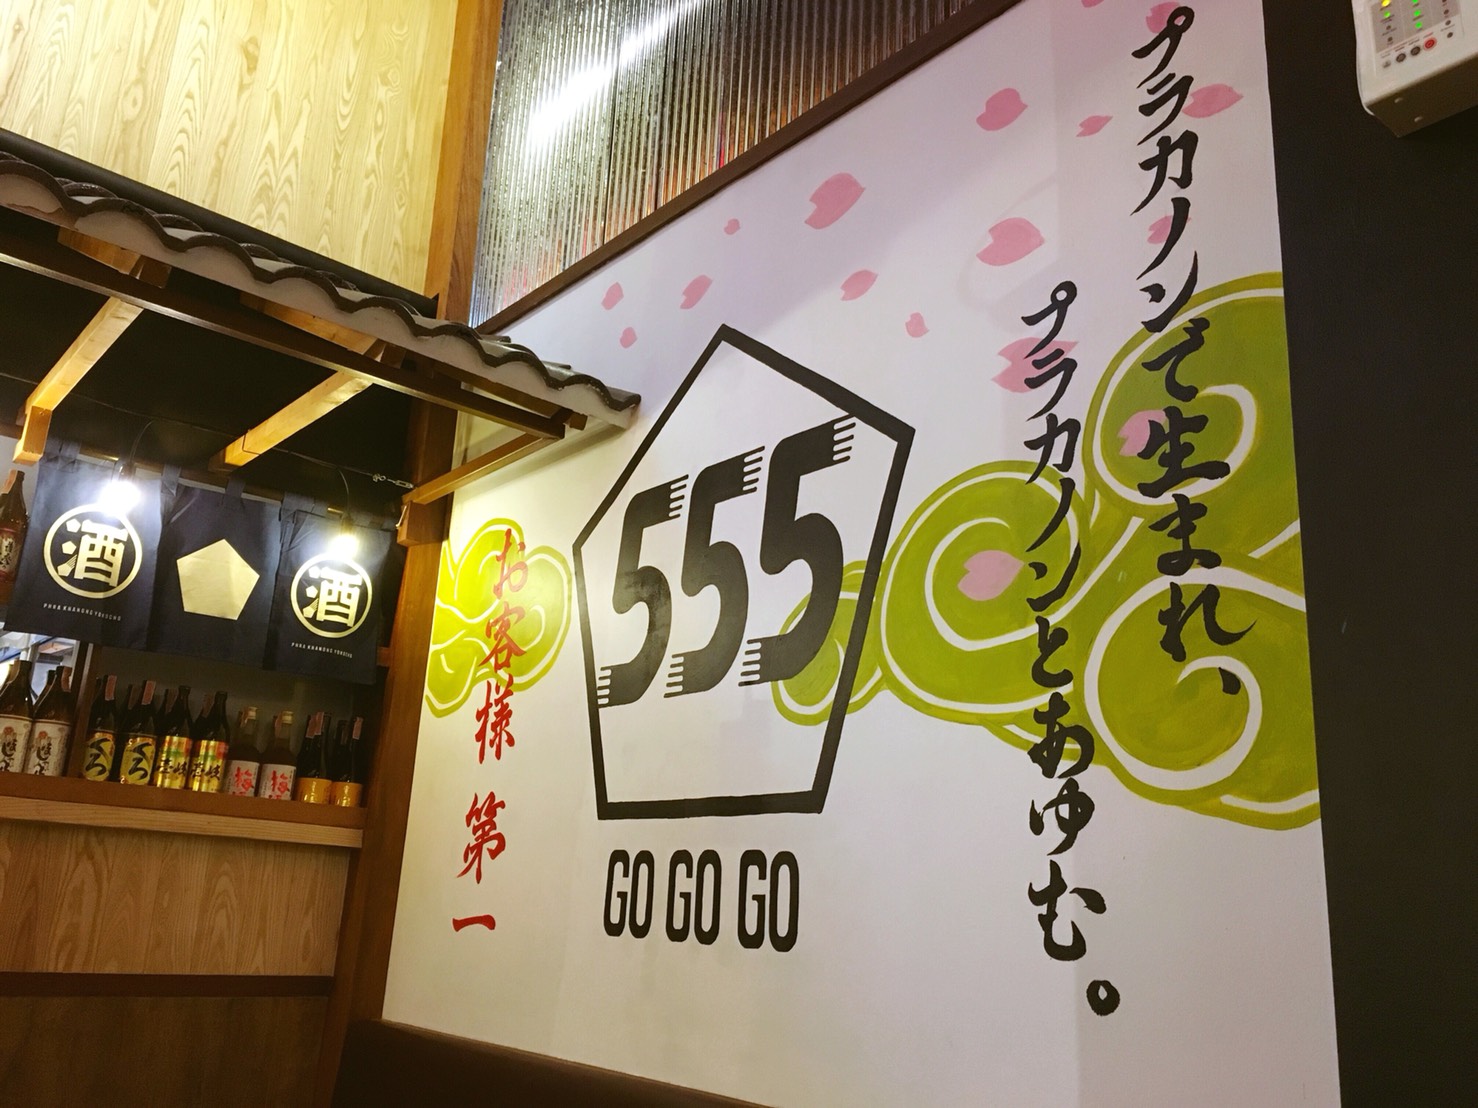 タイ 高松の飲食企業がバンコクに居酒屋五五五をオープン 教えてasean 海外 Aseanの飲食店出店なら